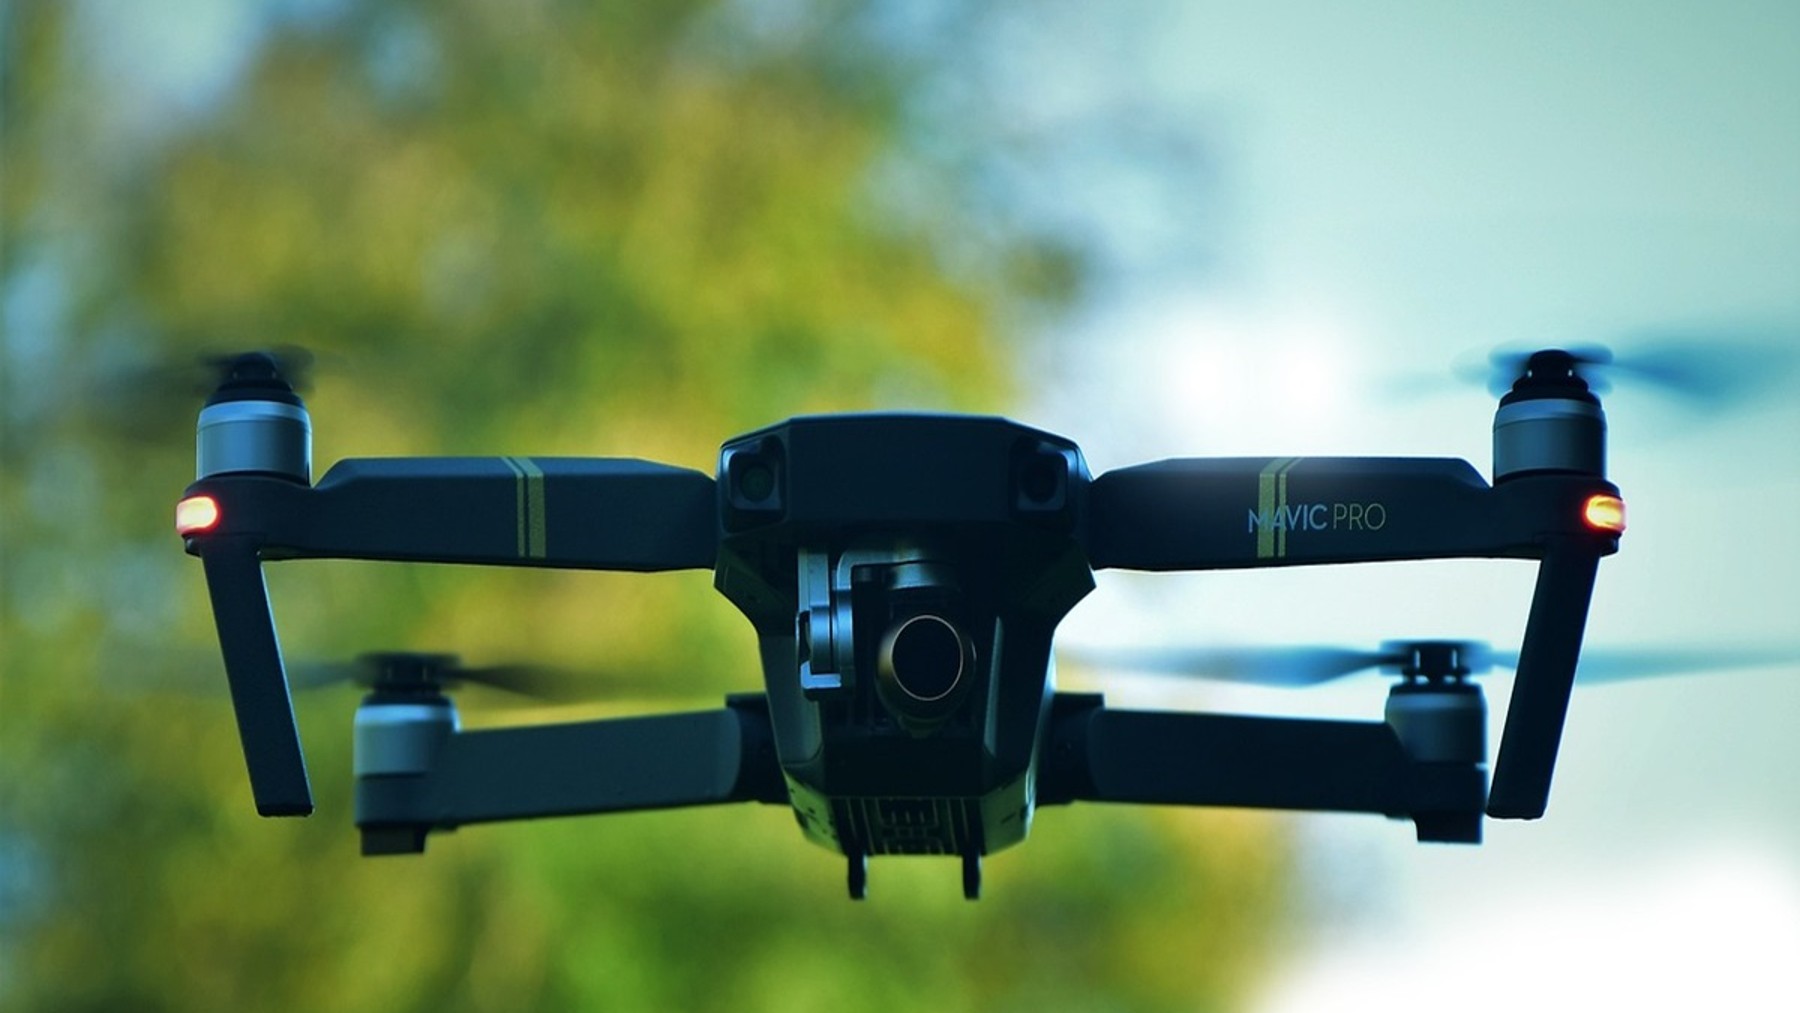 tira el precio del dron DJI ideal para principiantes con